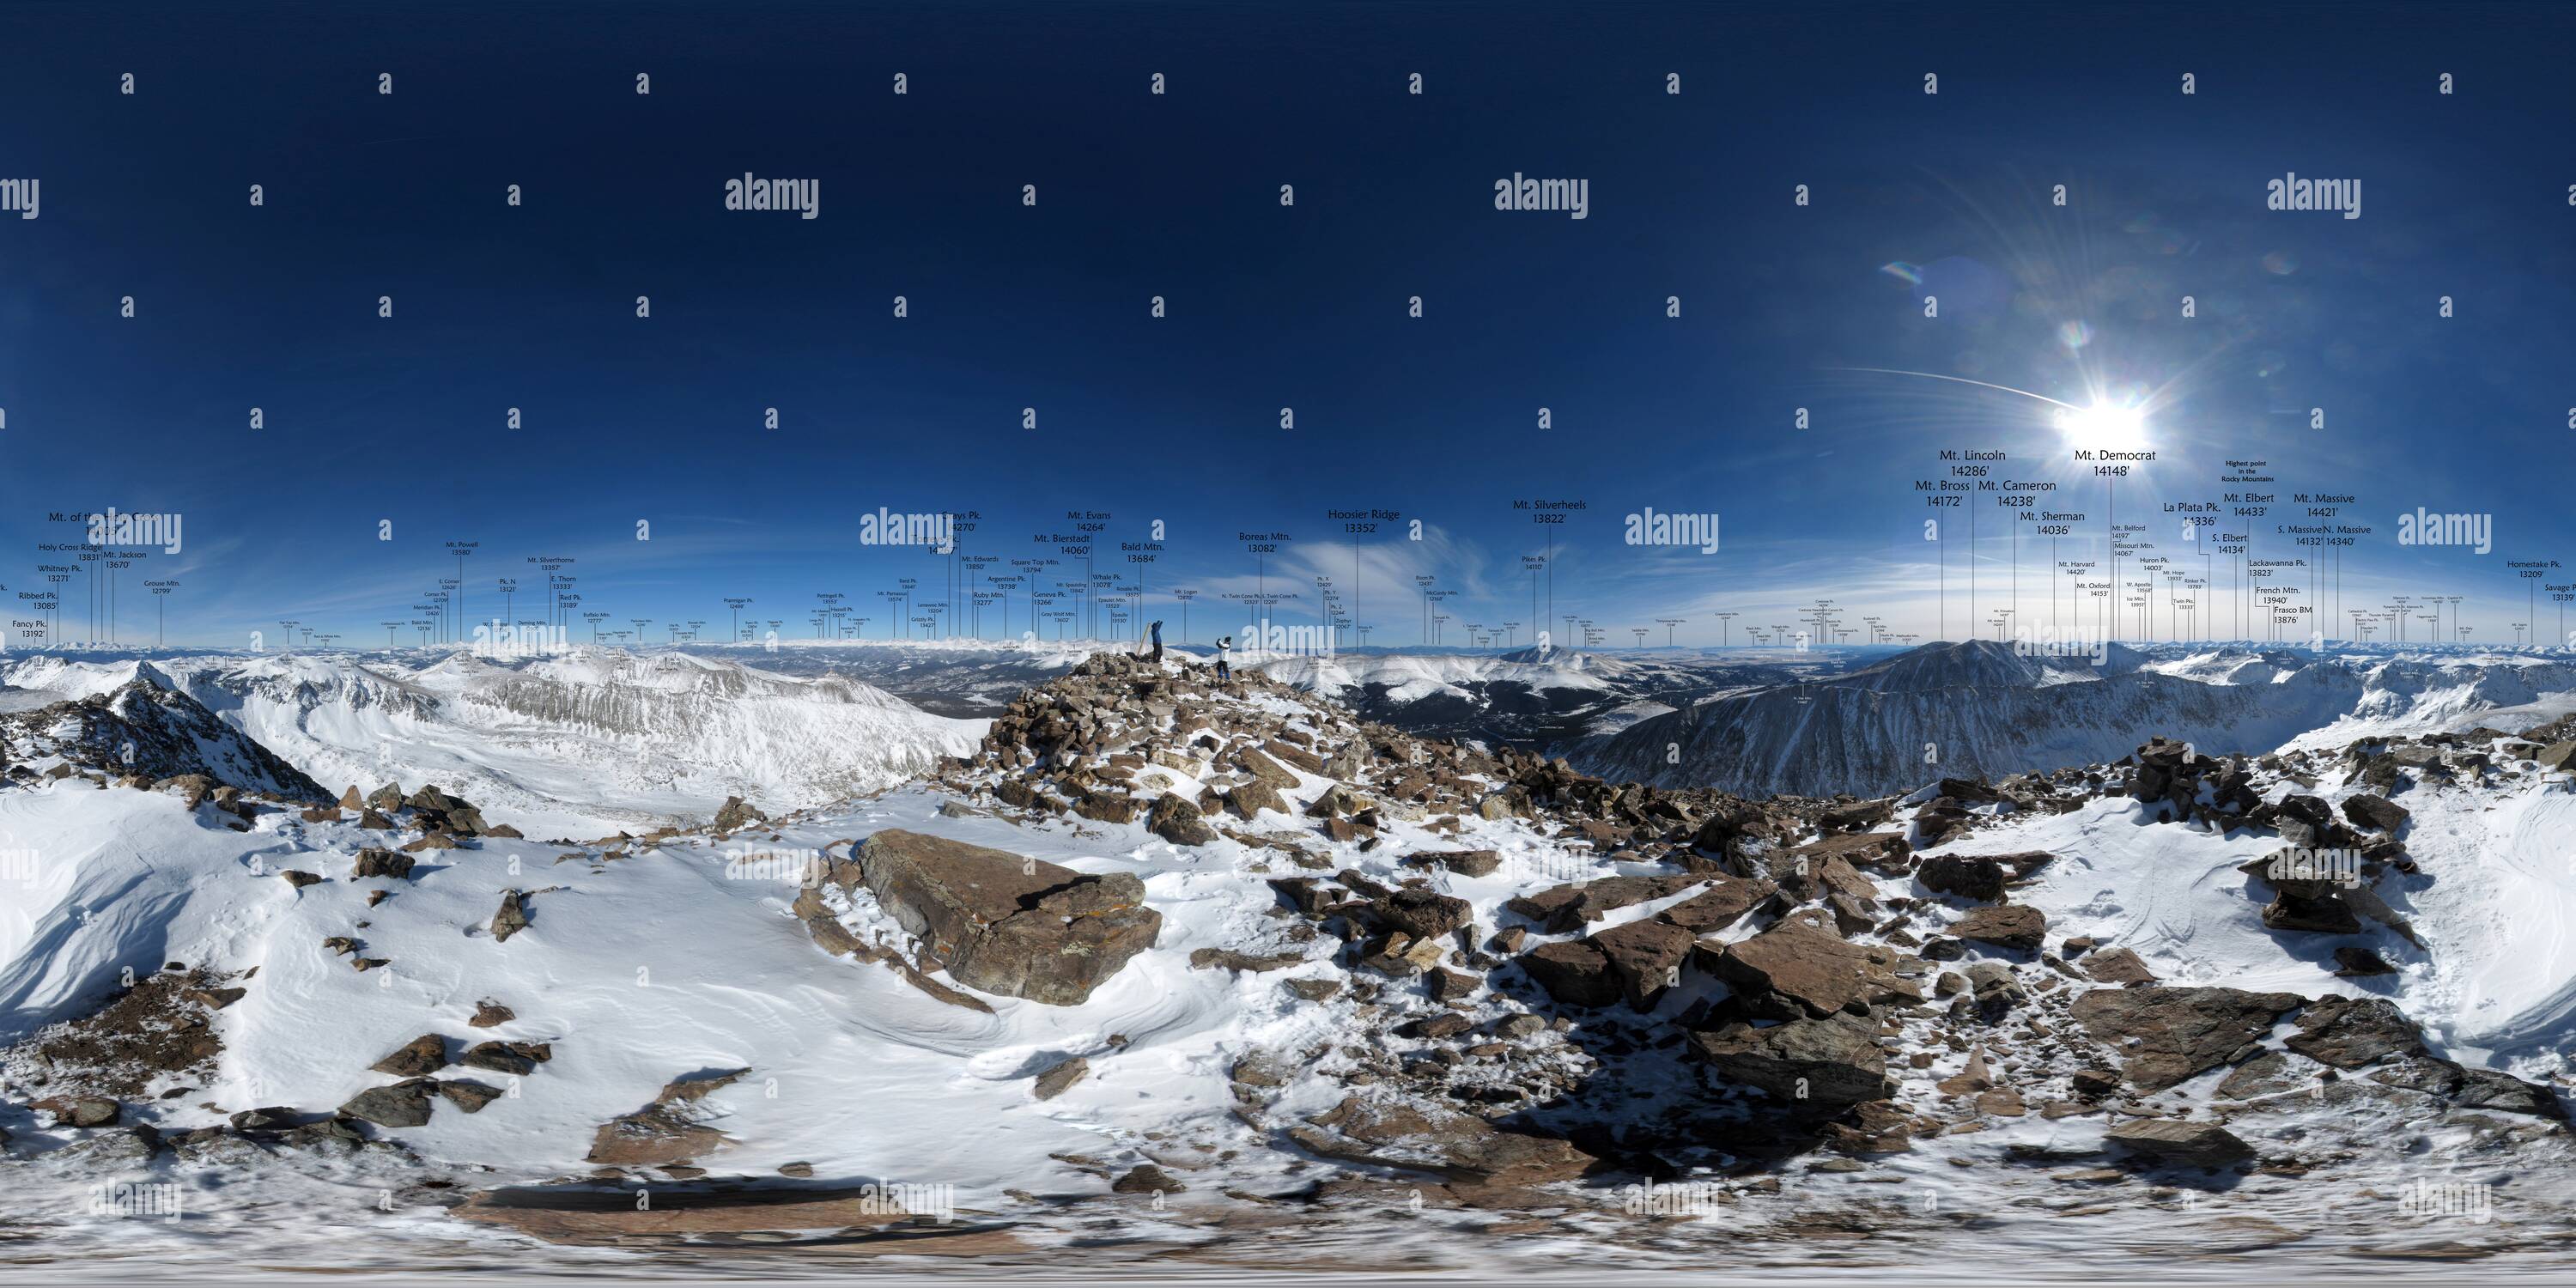 360 degree panoramic view of Quandary Peak (14265'/4348') summit (annotated)